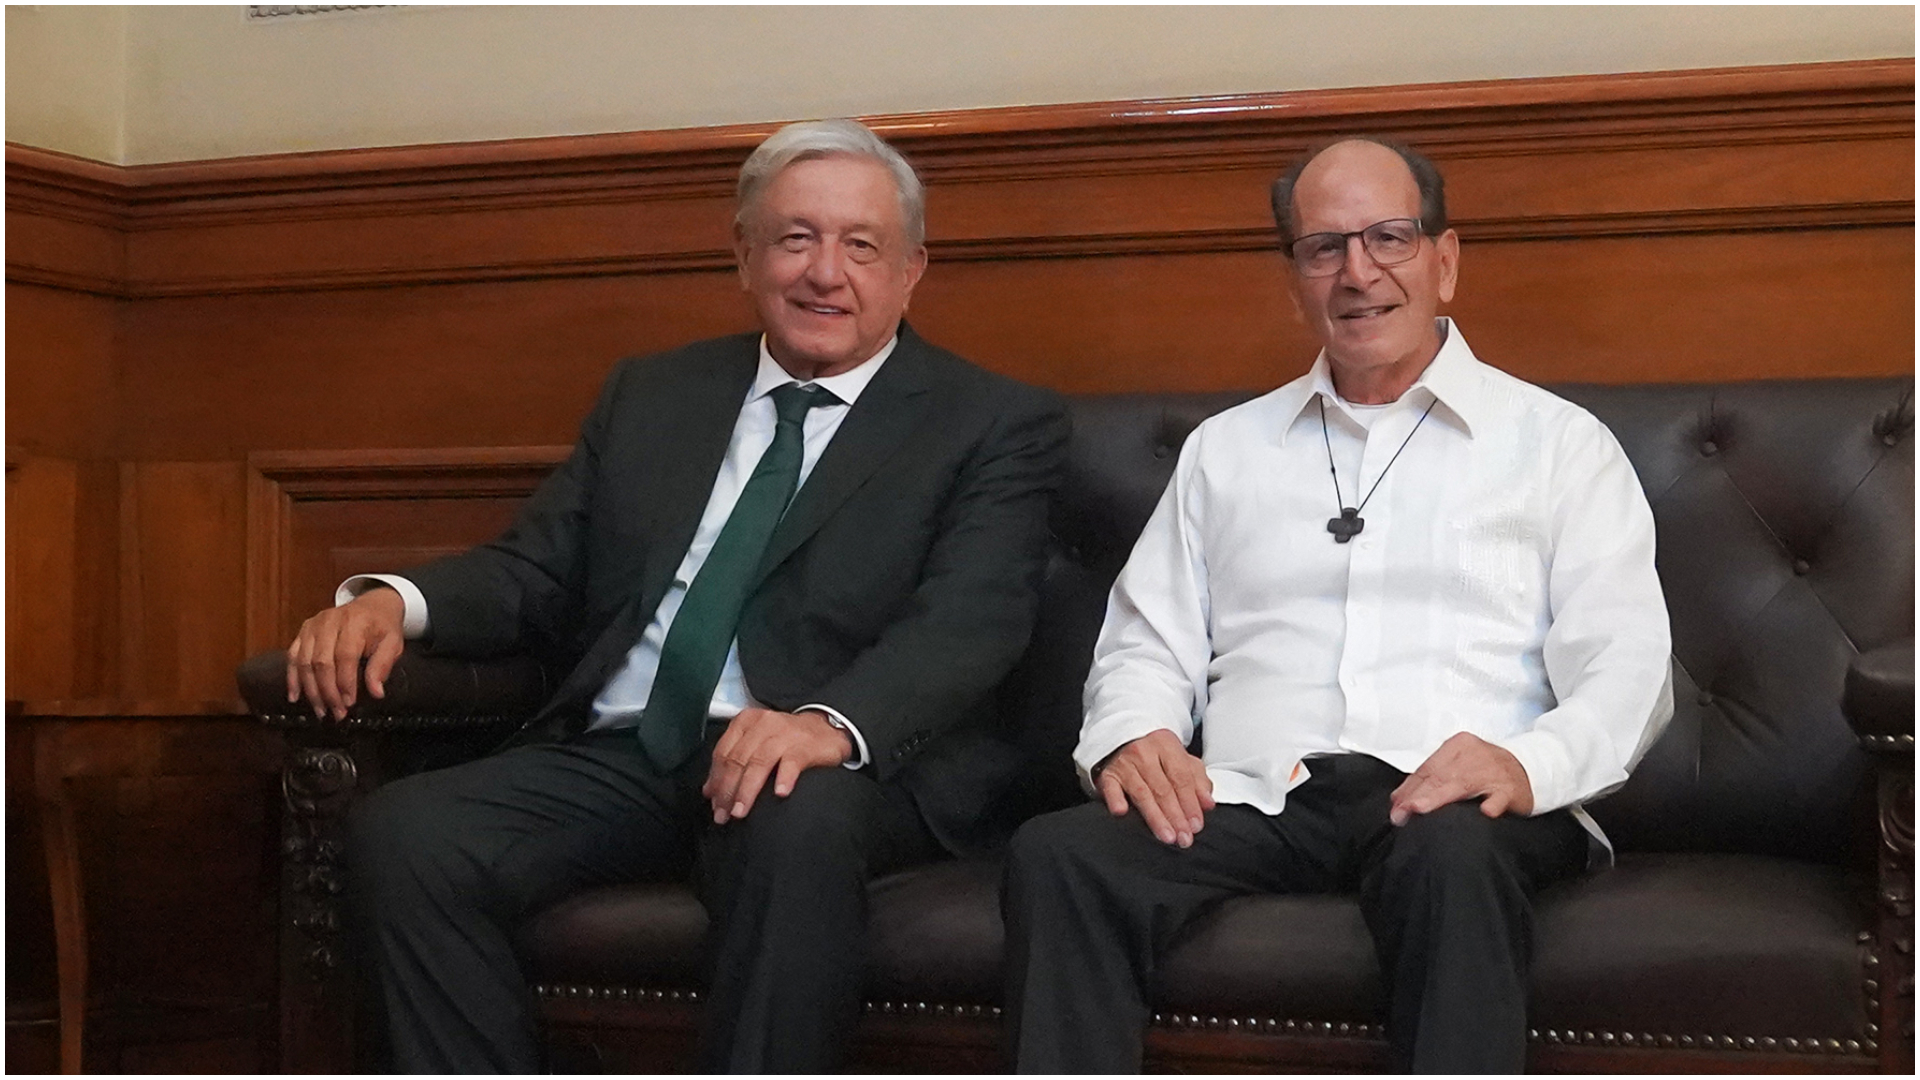 El presidente mexicano compartió el encuentro en redes sociales (Twitter/@lopezobrador_)